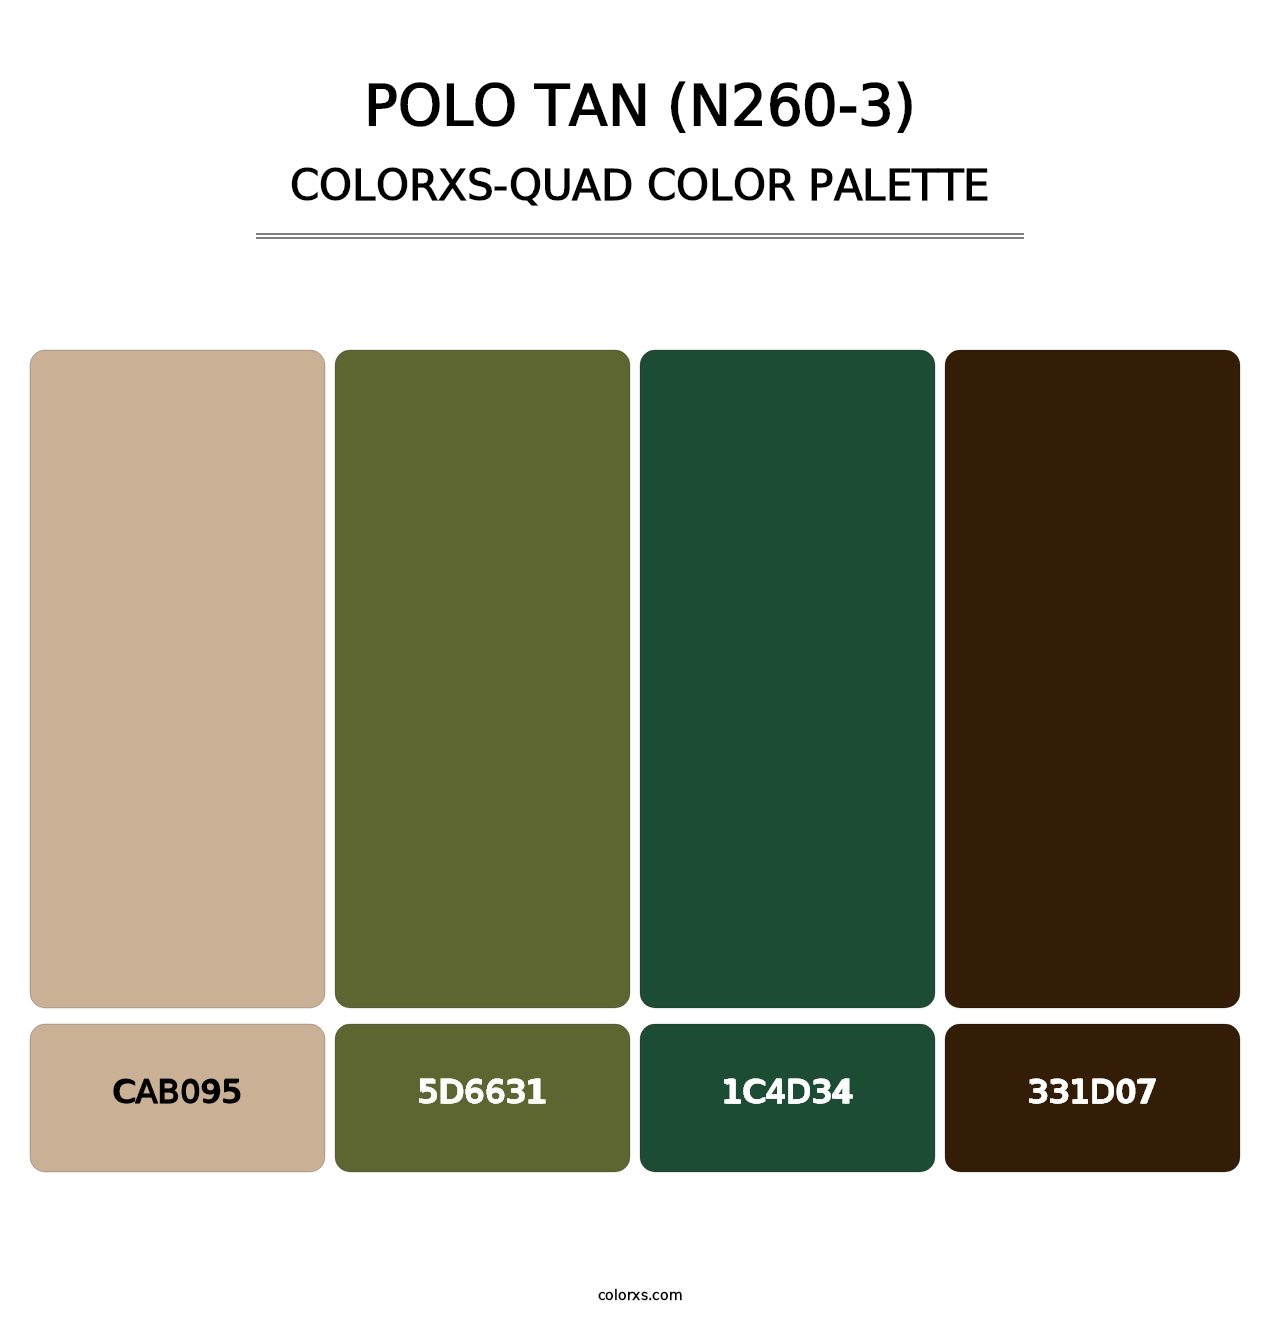 Polo Tan (N260-3) - Colorxs Quad Palette